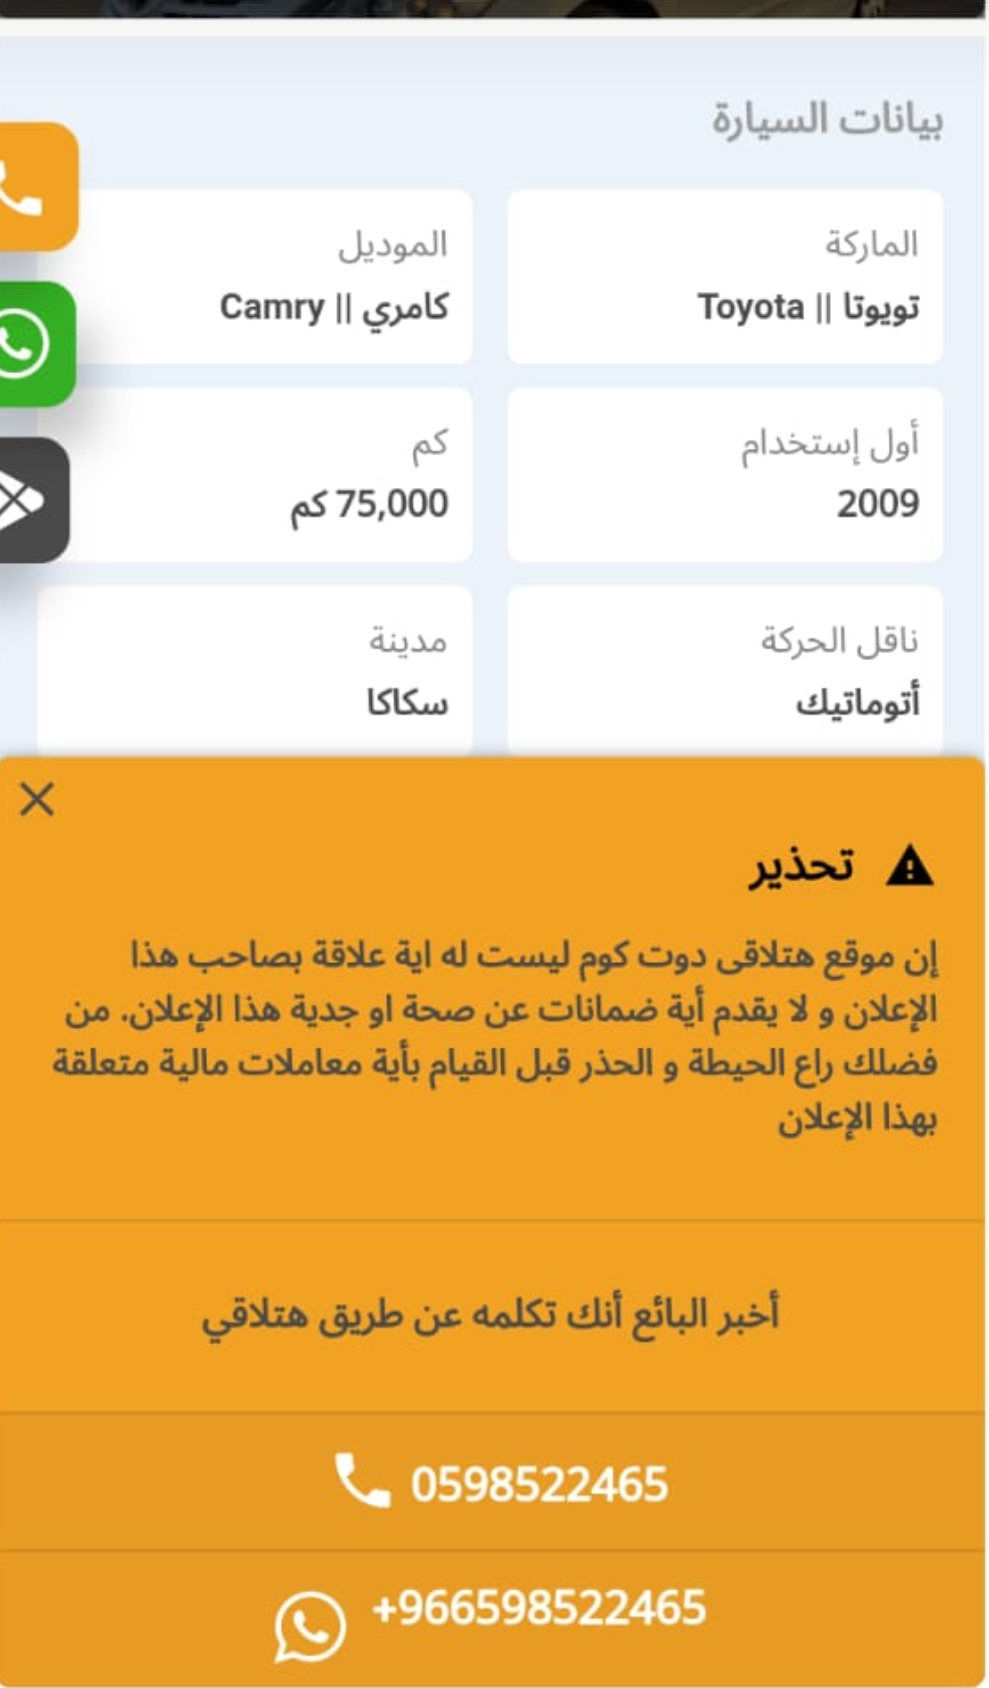 Screenshot ٢٠٢٣٠٥٢٣ ٢٢٥٦٣٩ WhatsApp - مدونة التقنية العربية